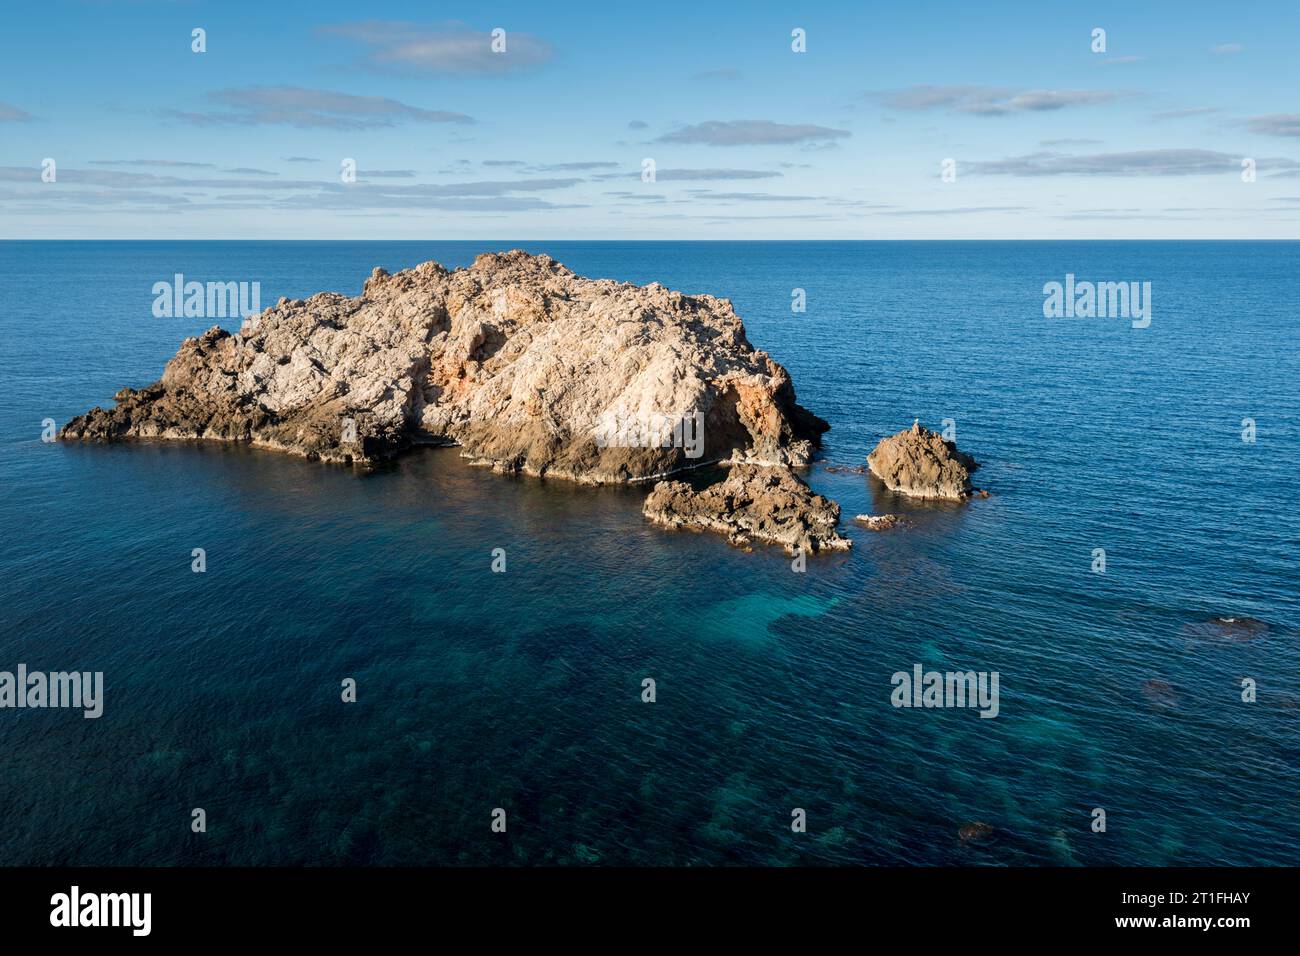 Felsige Insel vor menorcas Küste, balearen Inseln, spanien Stockfoto